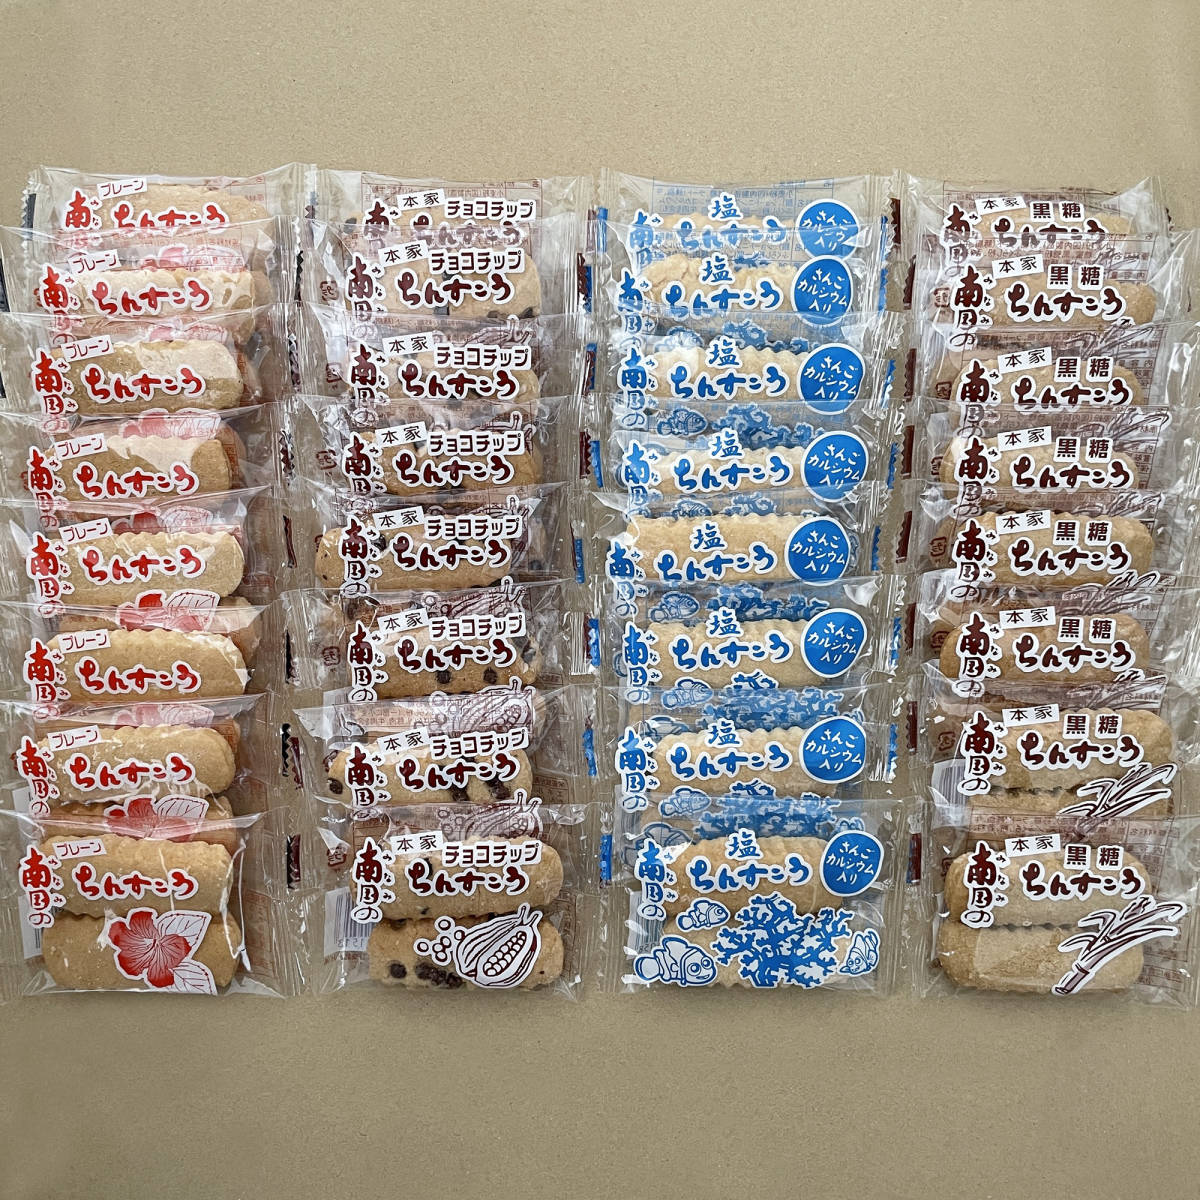 ちんすこう 4種類の詰め合わせA 32袋 64個 沖縄 お菓子 南国製菓_画像1